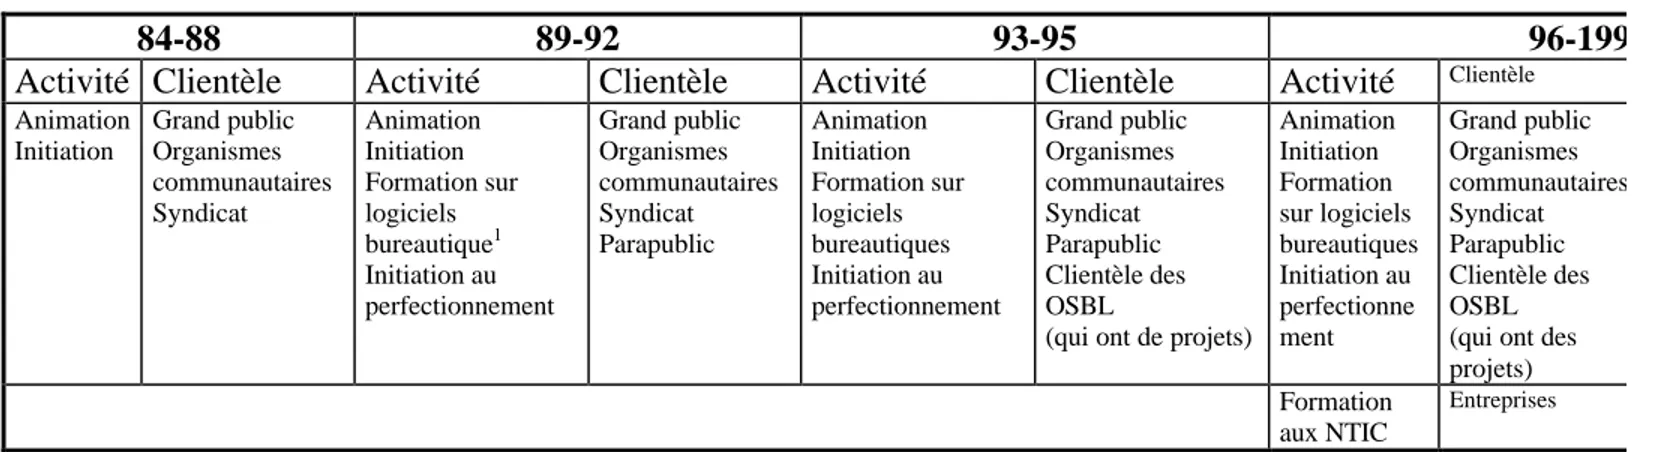 Tableau 9 : La Puce : Évolution des activités de formation 1984-1999